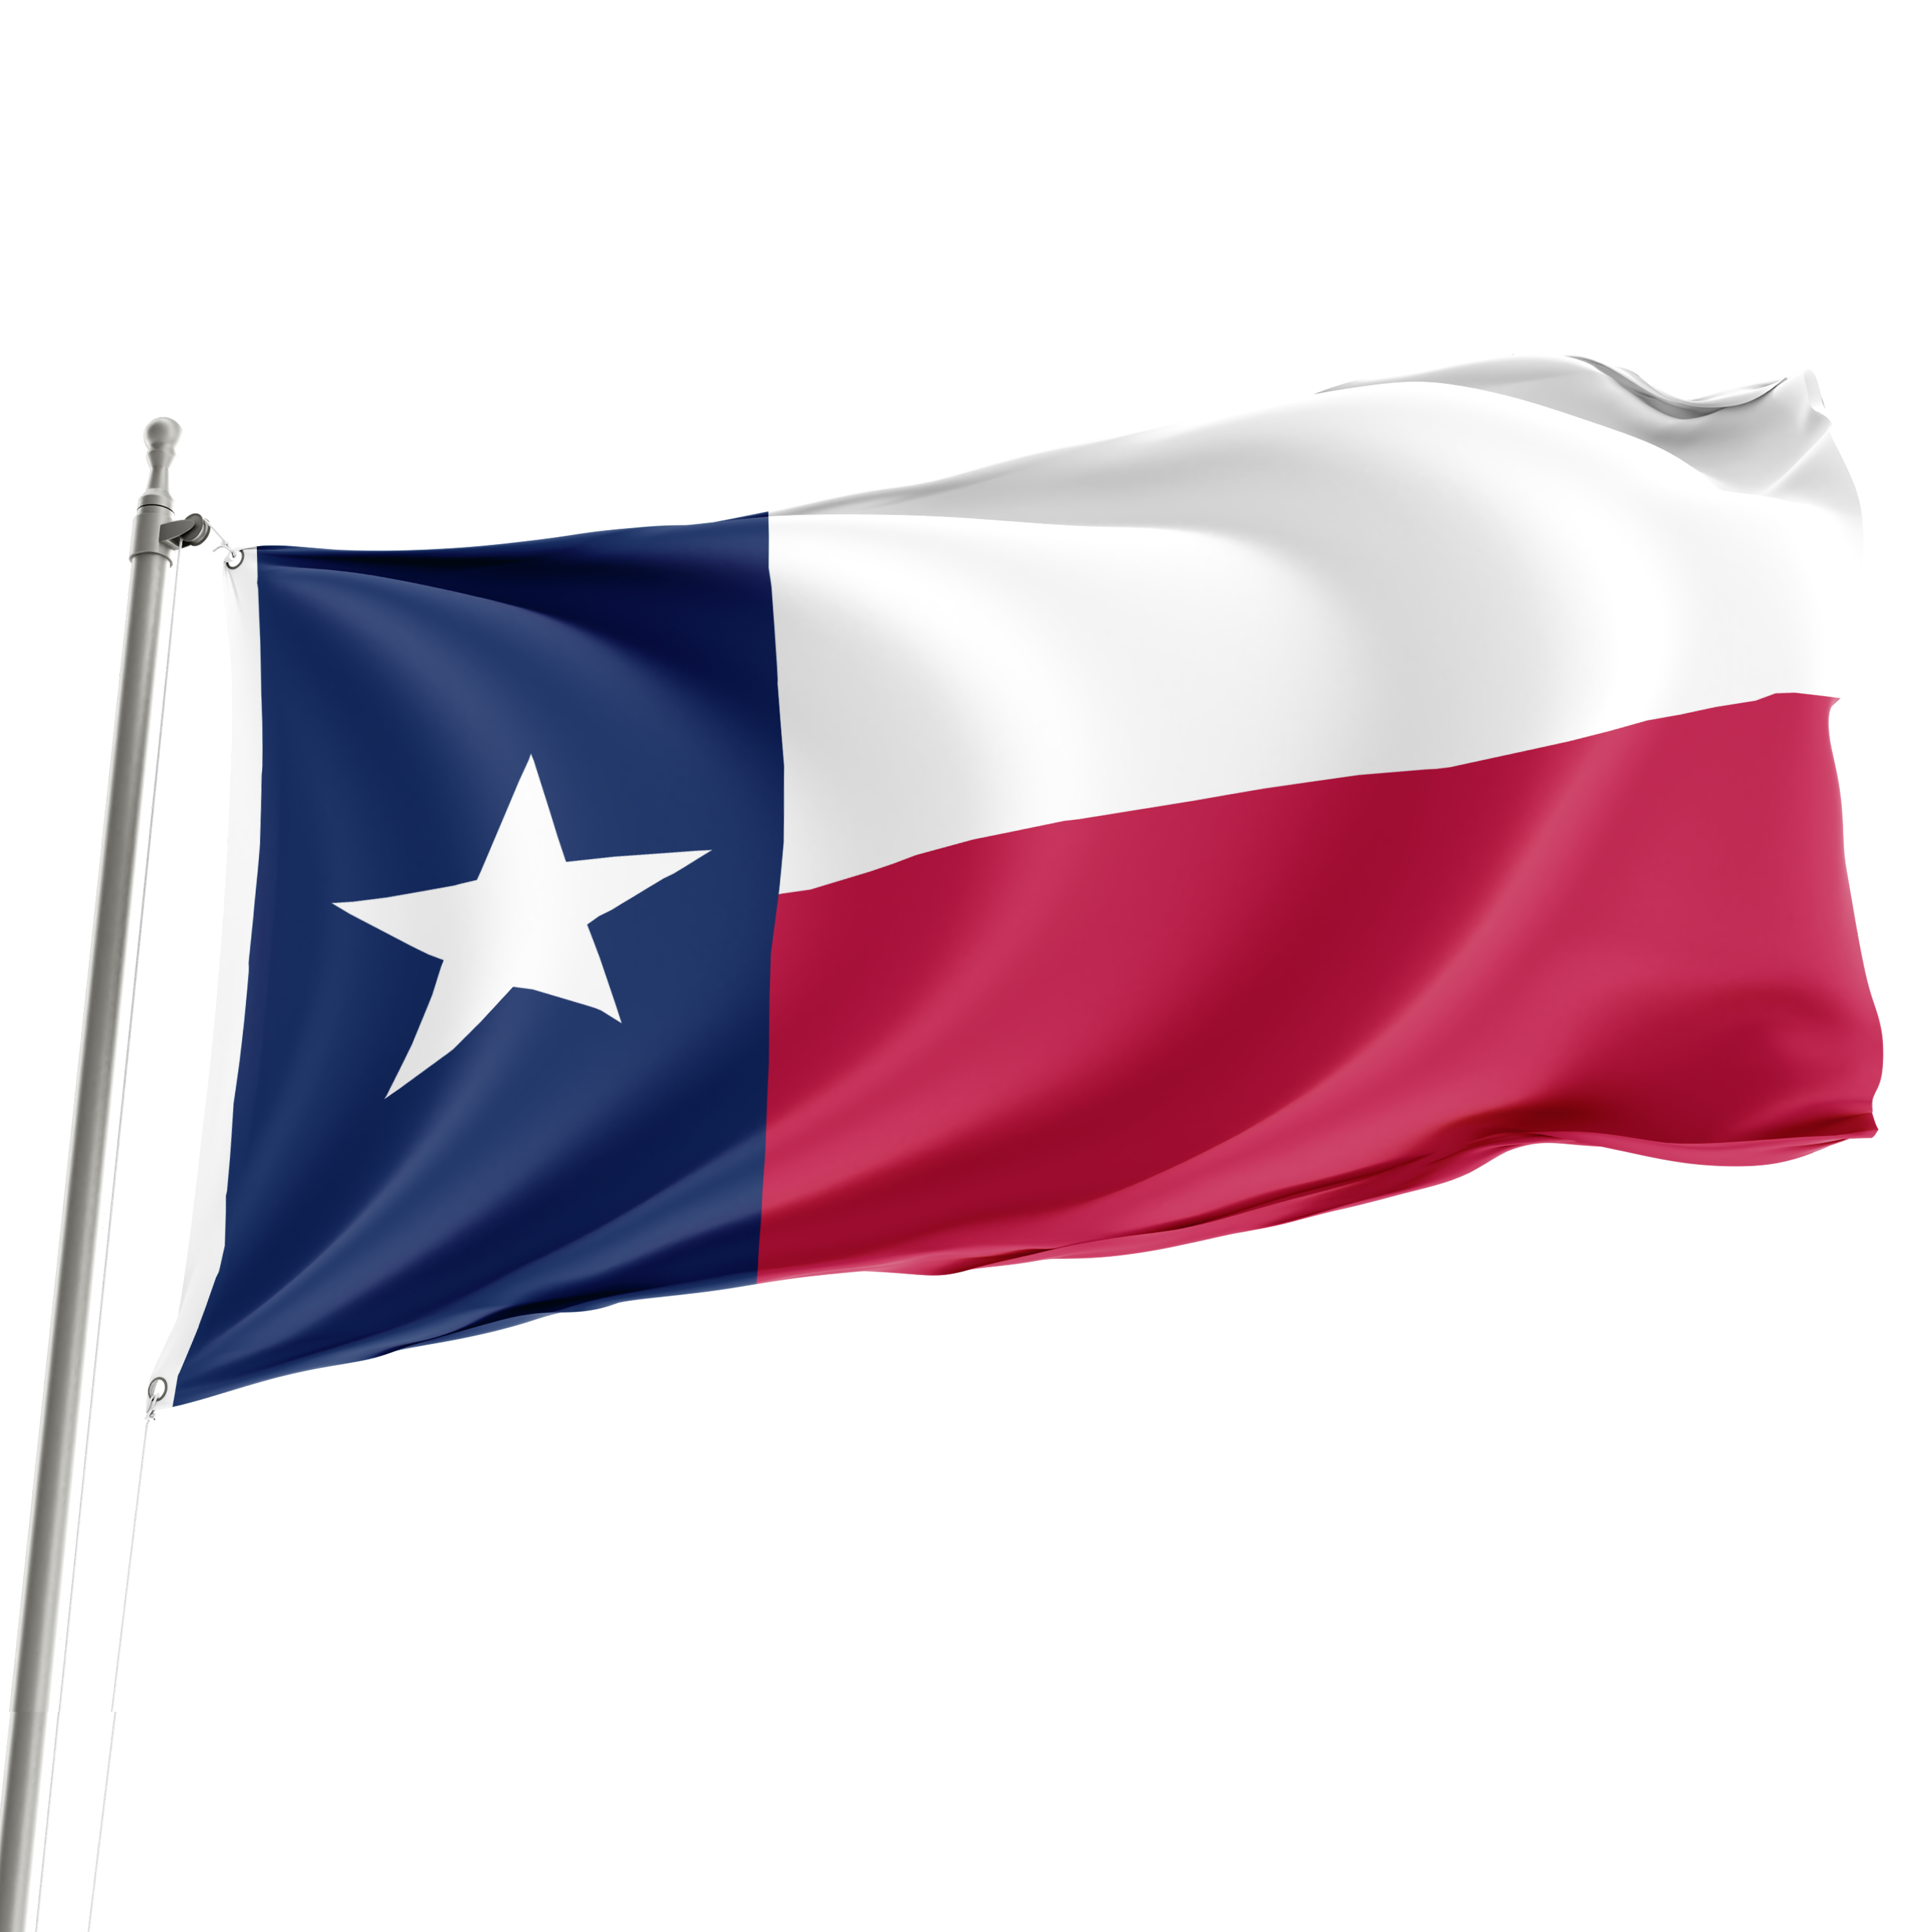 3' x 5' Texas Flag